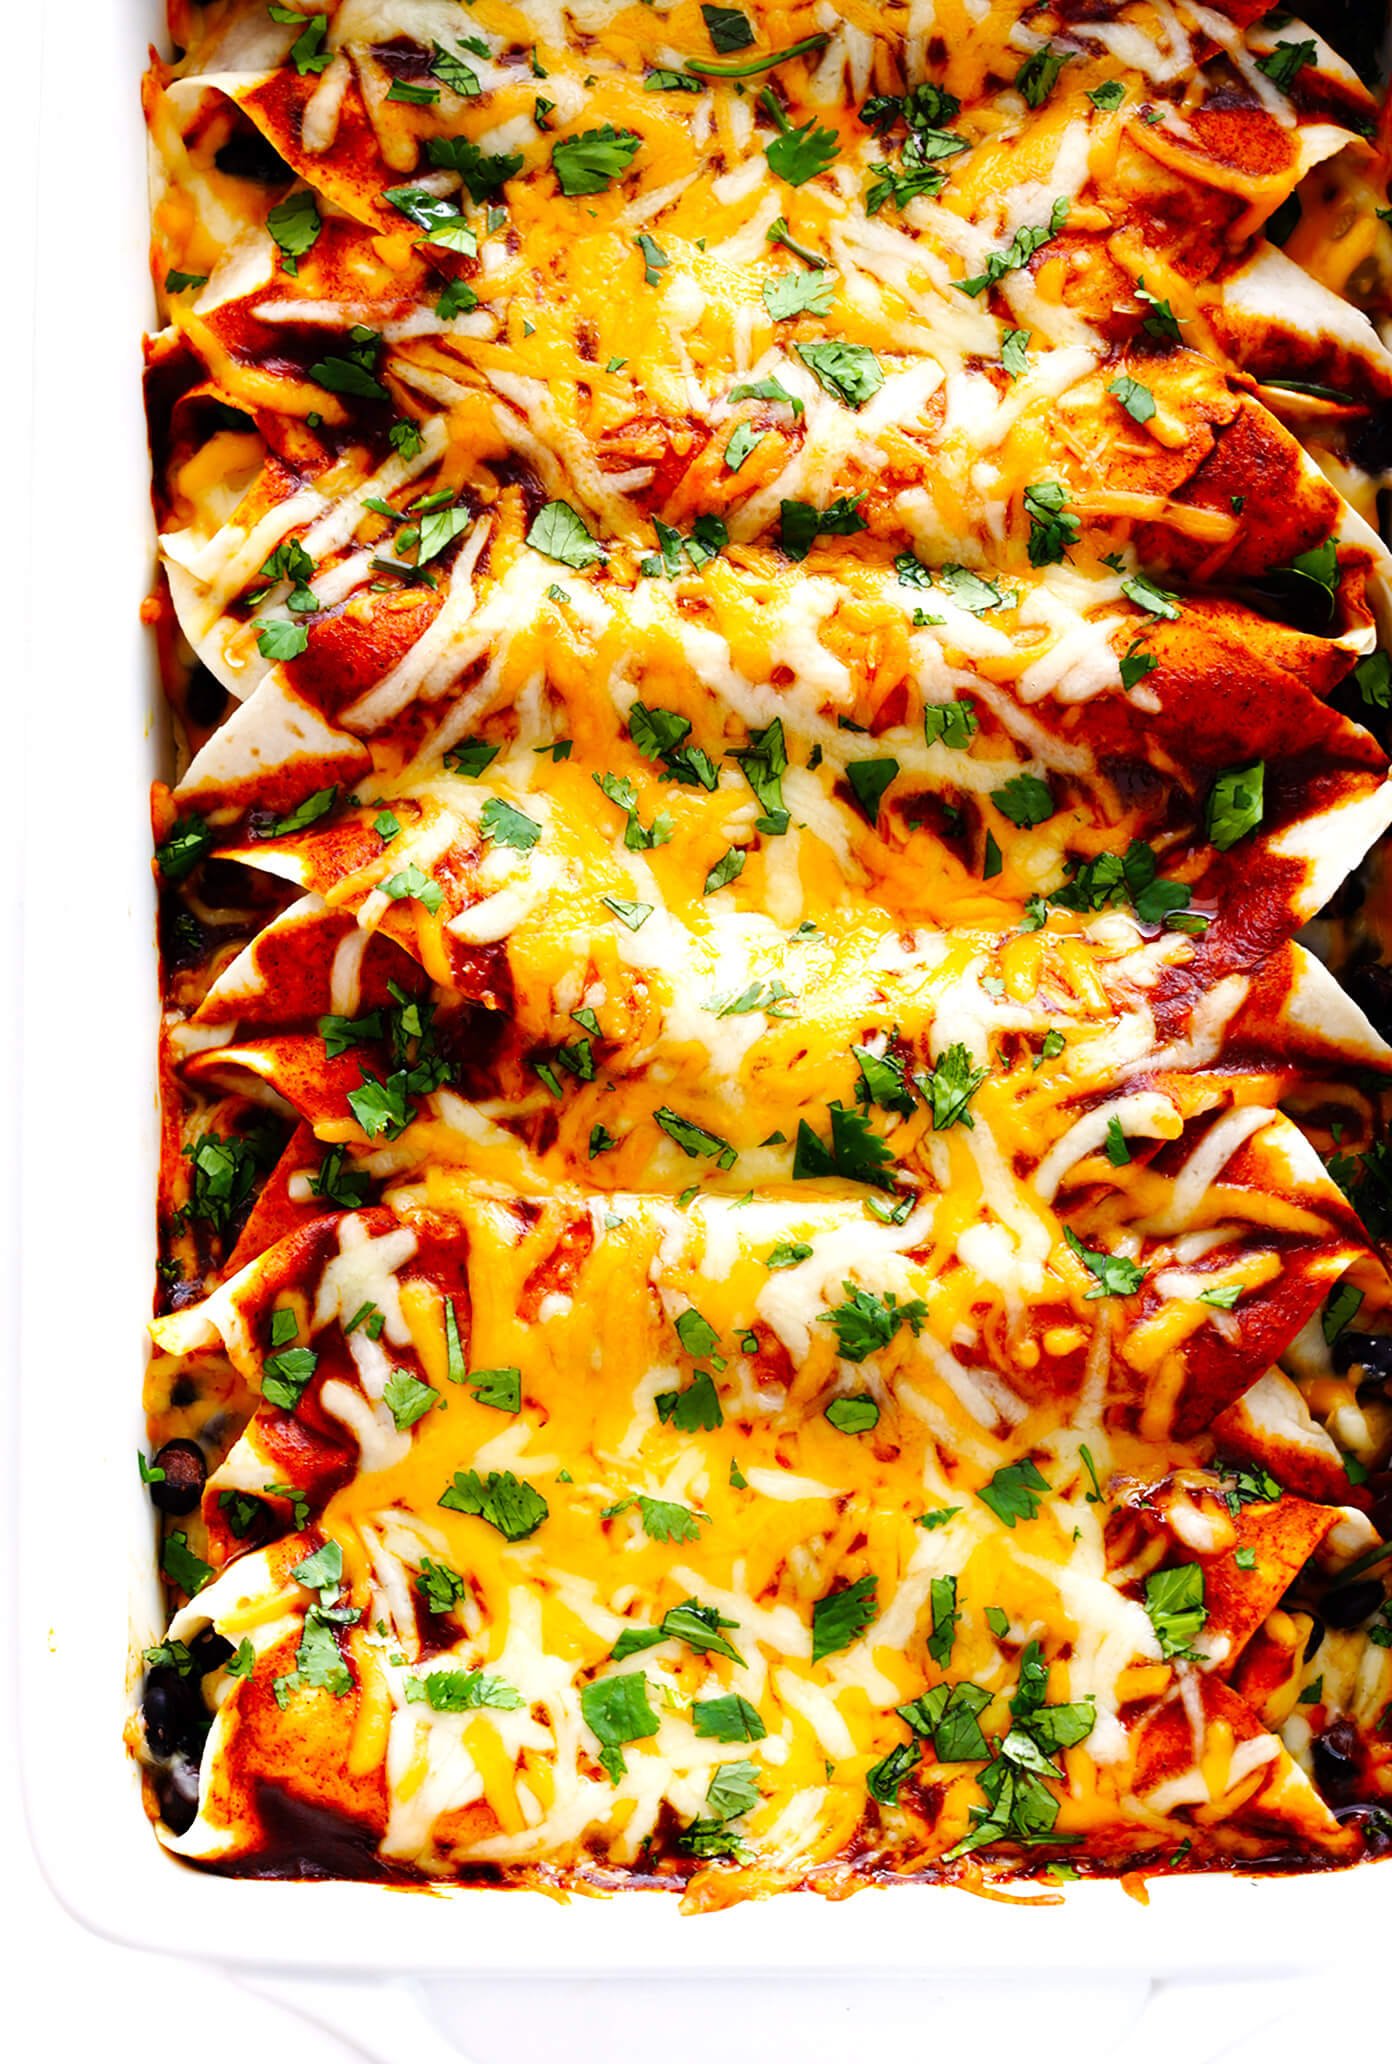 Chicken enchiladas made with homemade enchilada sauce recipe